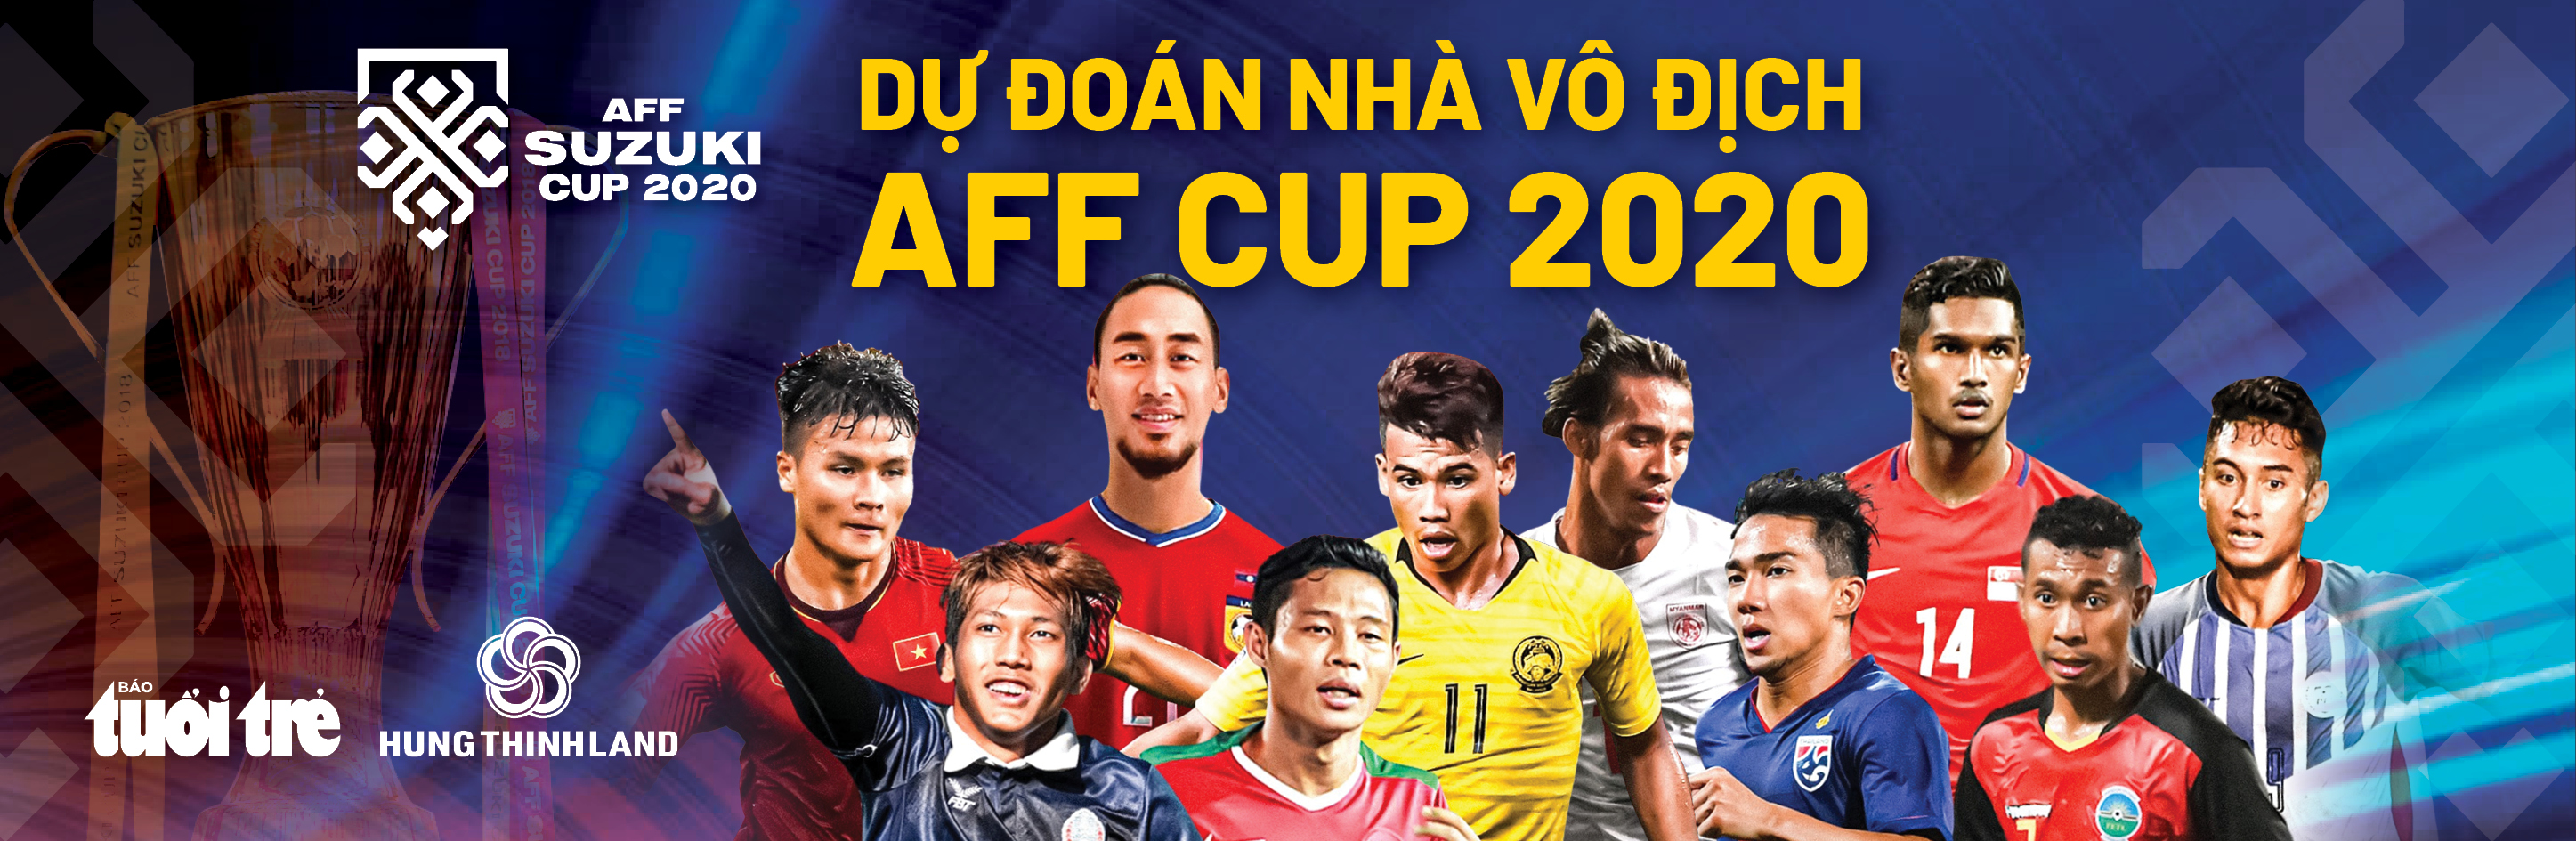 Lịch trực tiếp bán kết lượt về AFF Cup 2020: Thái Lan gặp Việt Nam